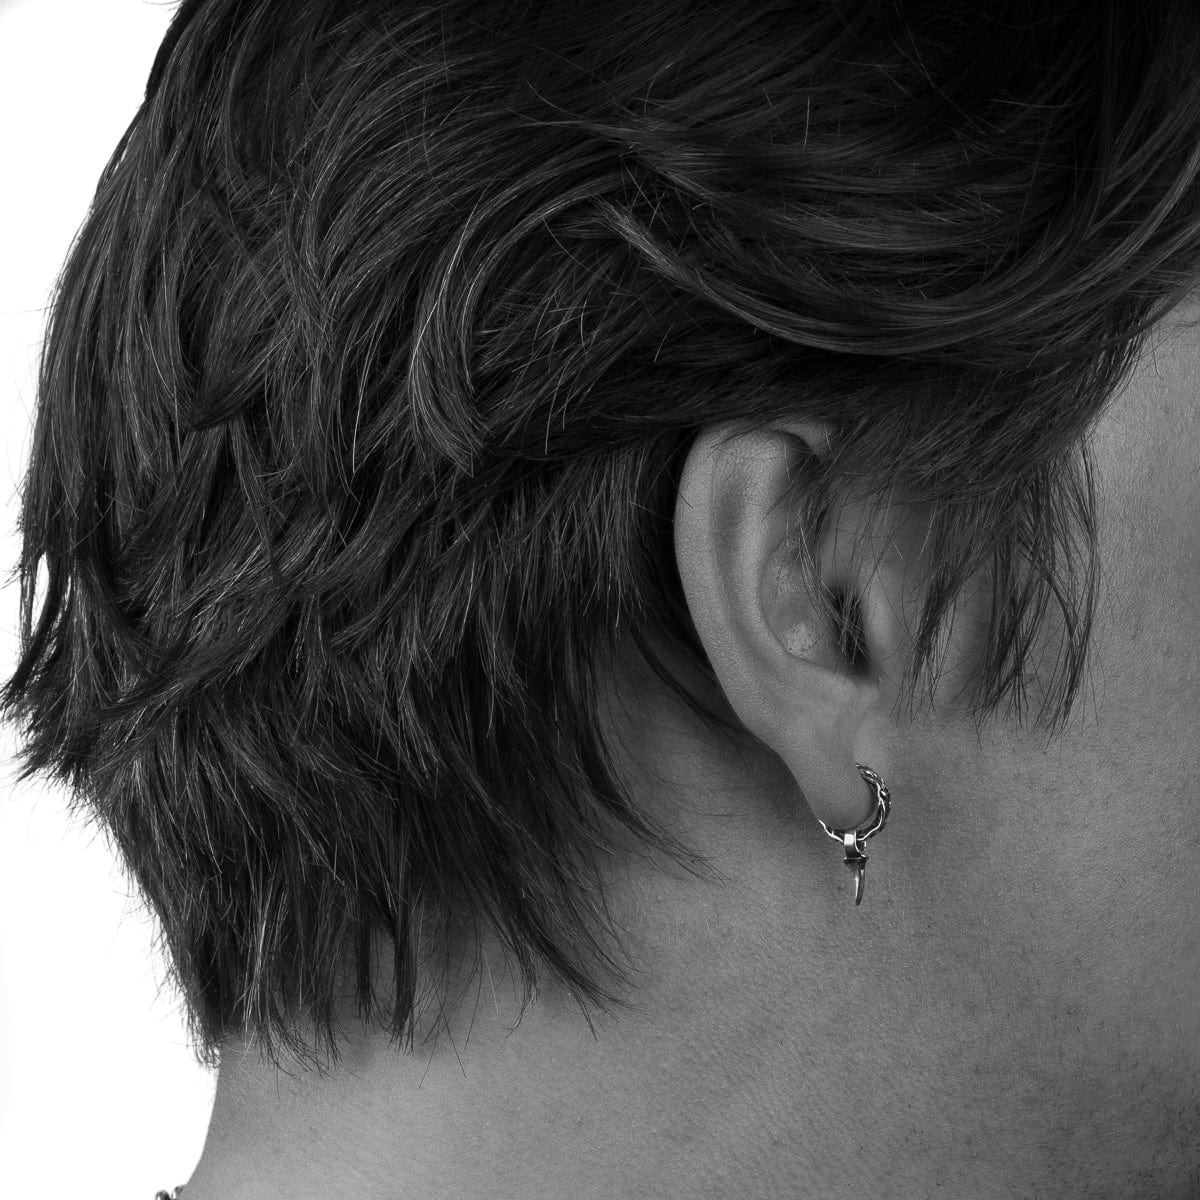 Bloodline Design Canada Mens Earrings Single Thorn Hoop Earrings